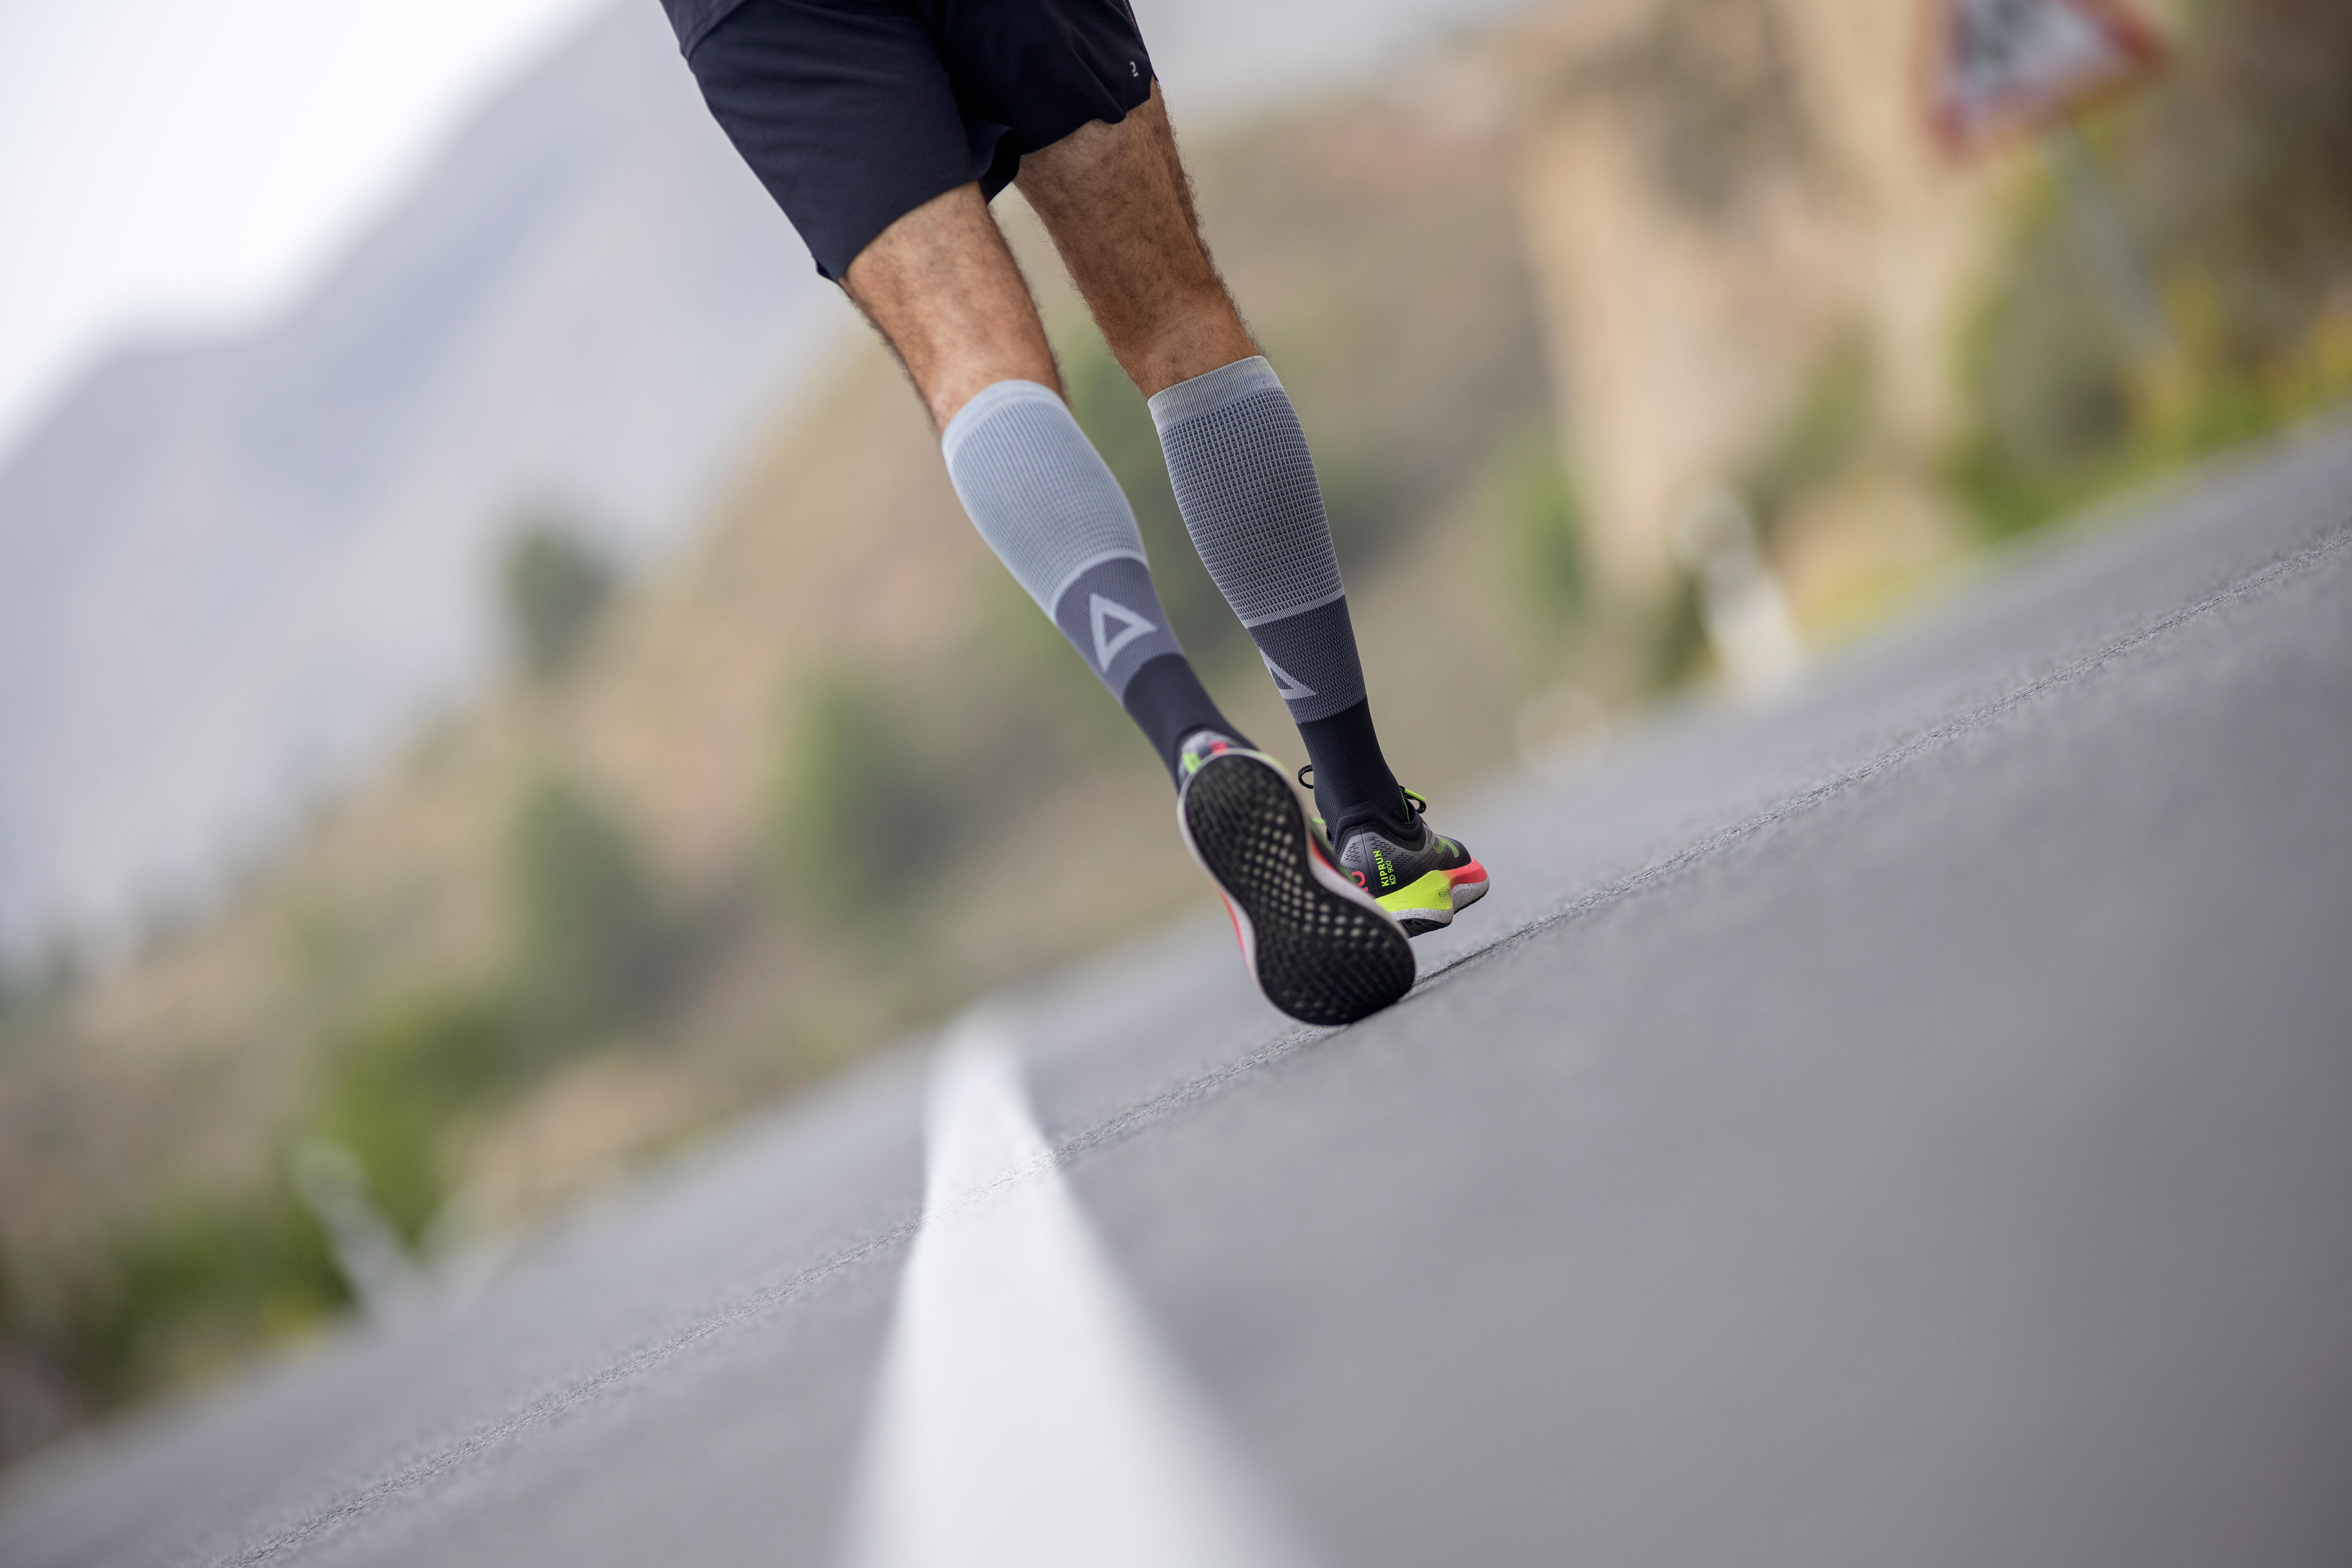 Pourquoi courir avec des chaussettes de running